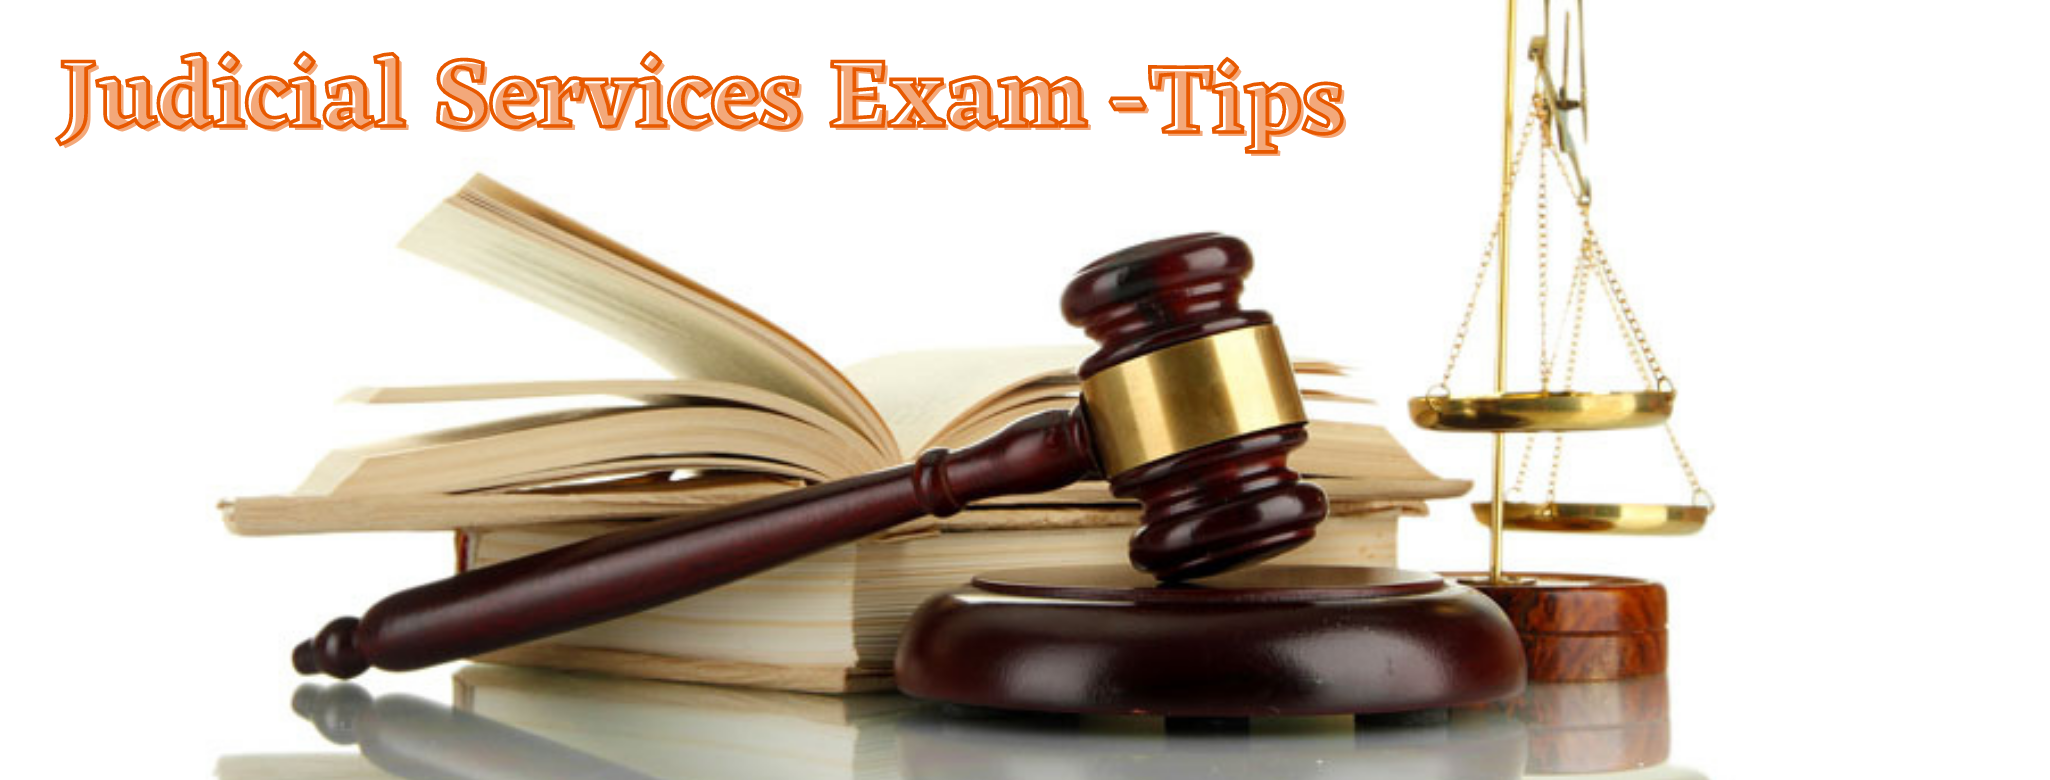 Judicial services exam